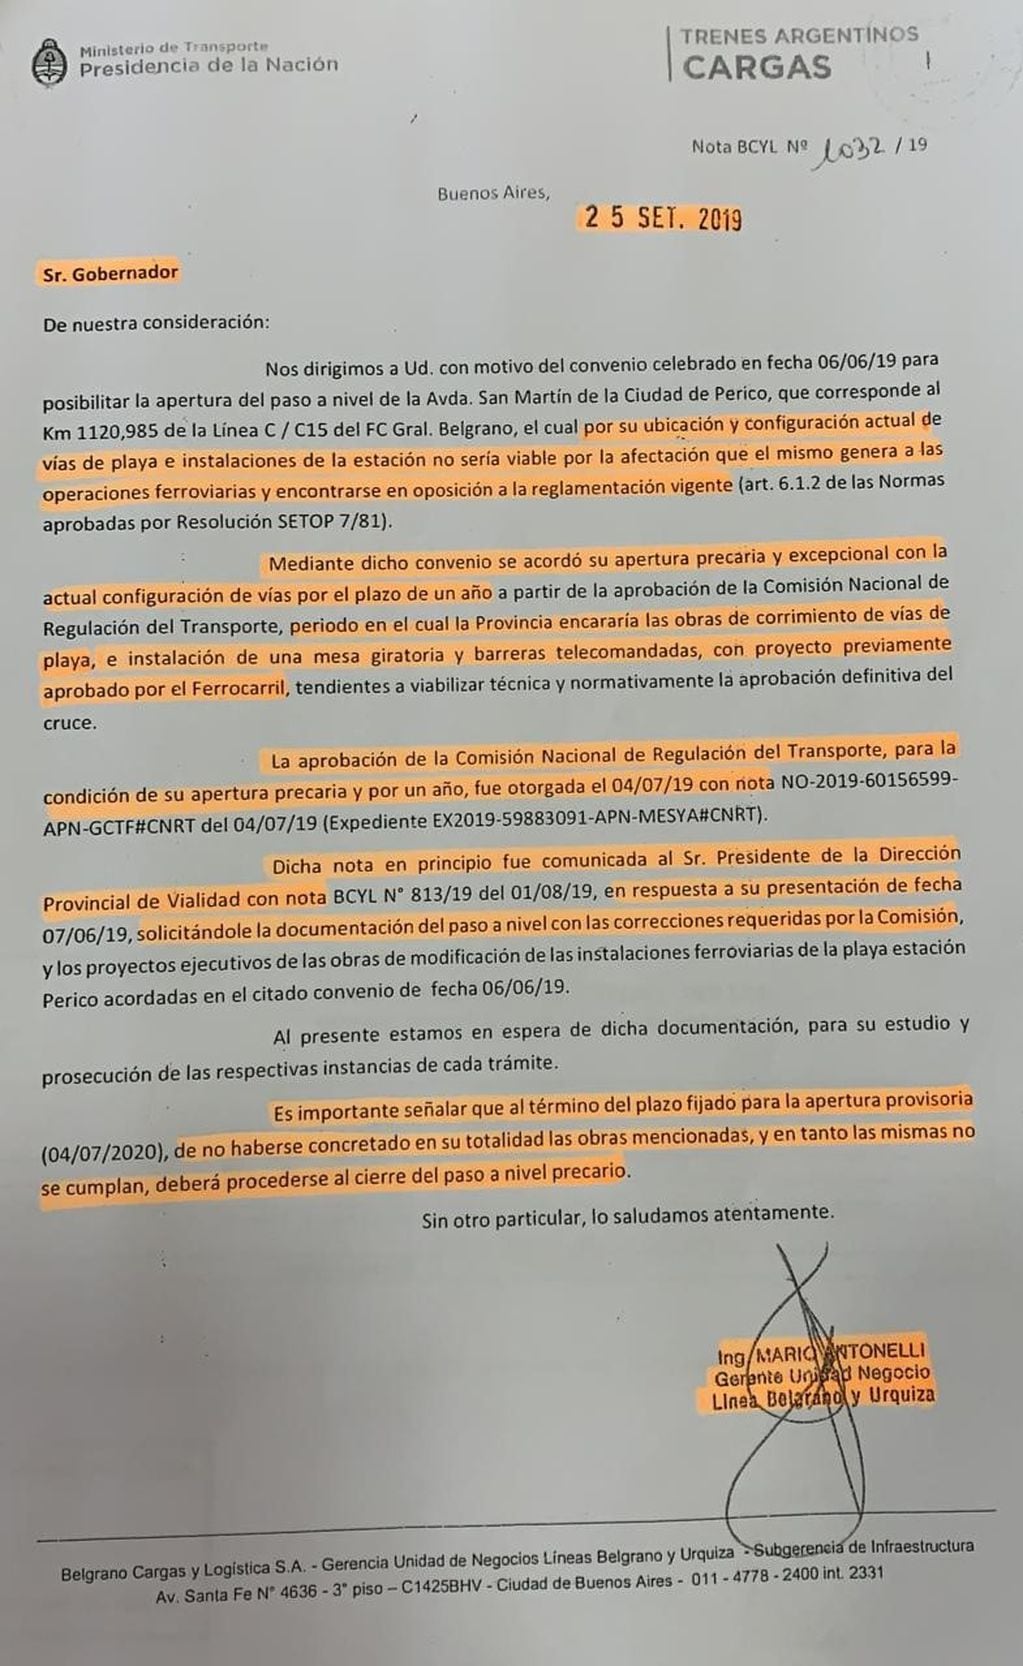 Nota de la empresa estatal Trenes Argentinos Cargas fechada en septiembre del año 2019, vinculada a compromisos establecidos con la Provincia de Jujuy respecto del acceso a la ciudad de Perico.